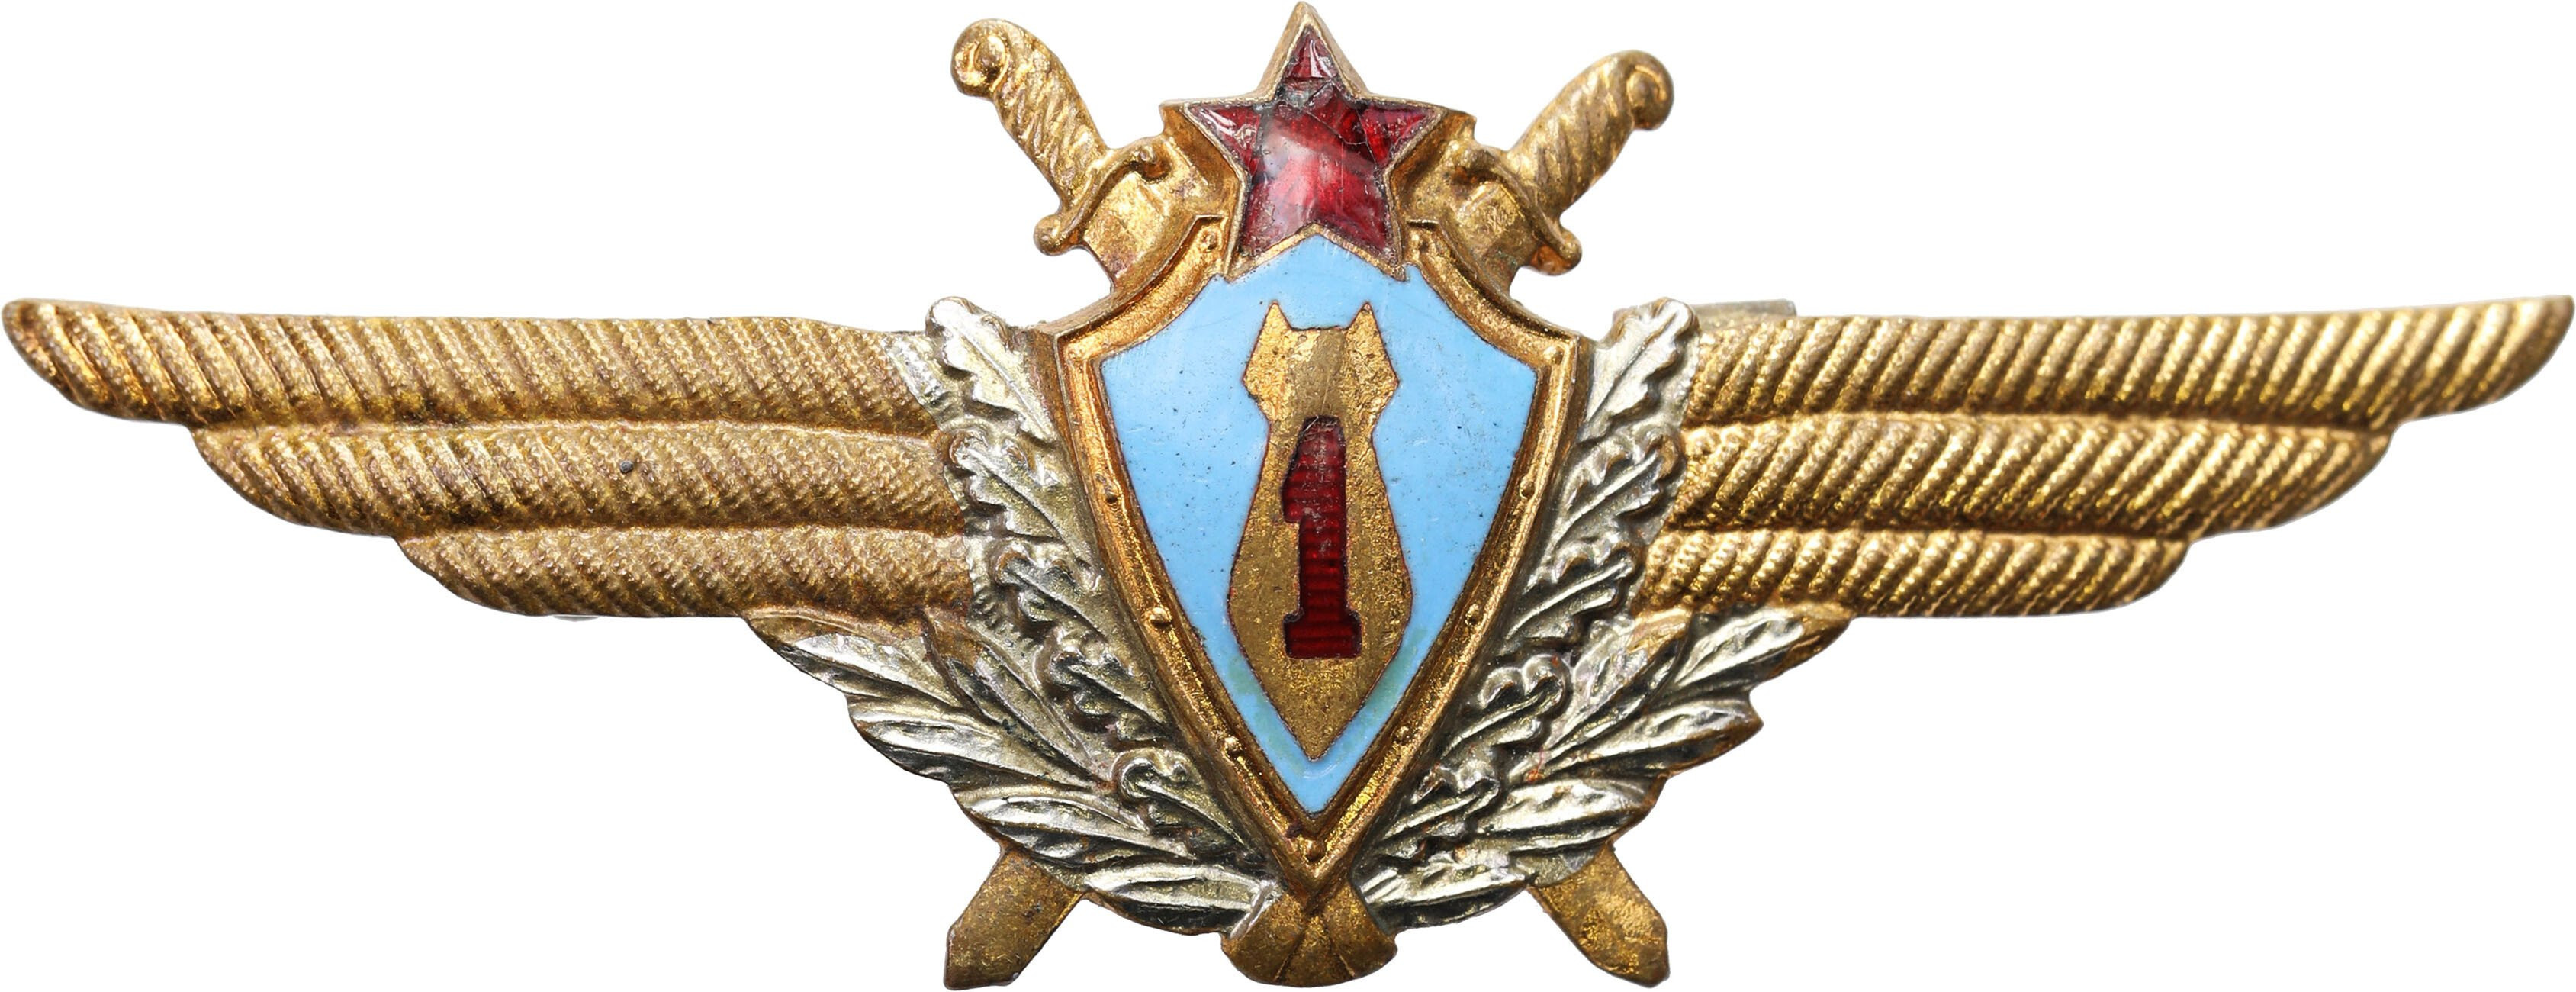 Rosja, ZSRR. Odznaka Pilota - I klasy 